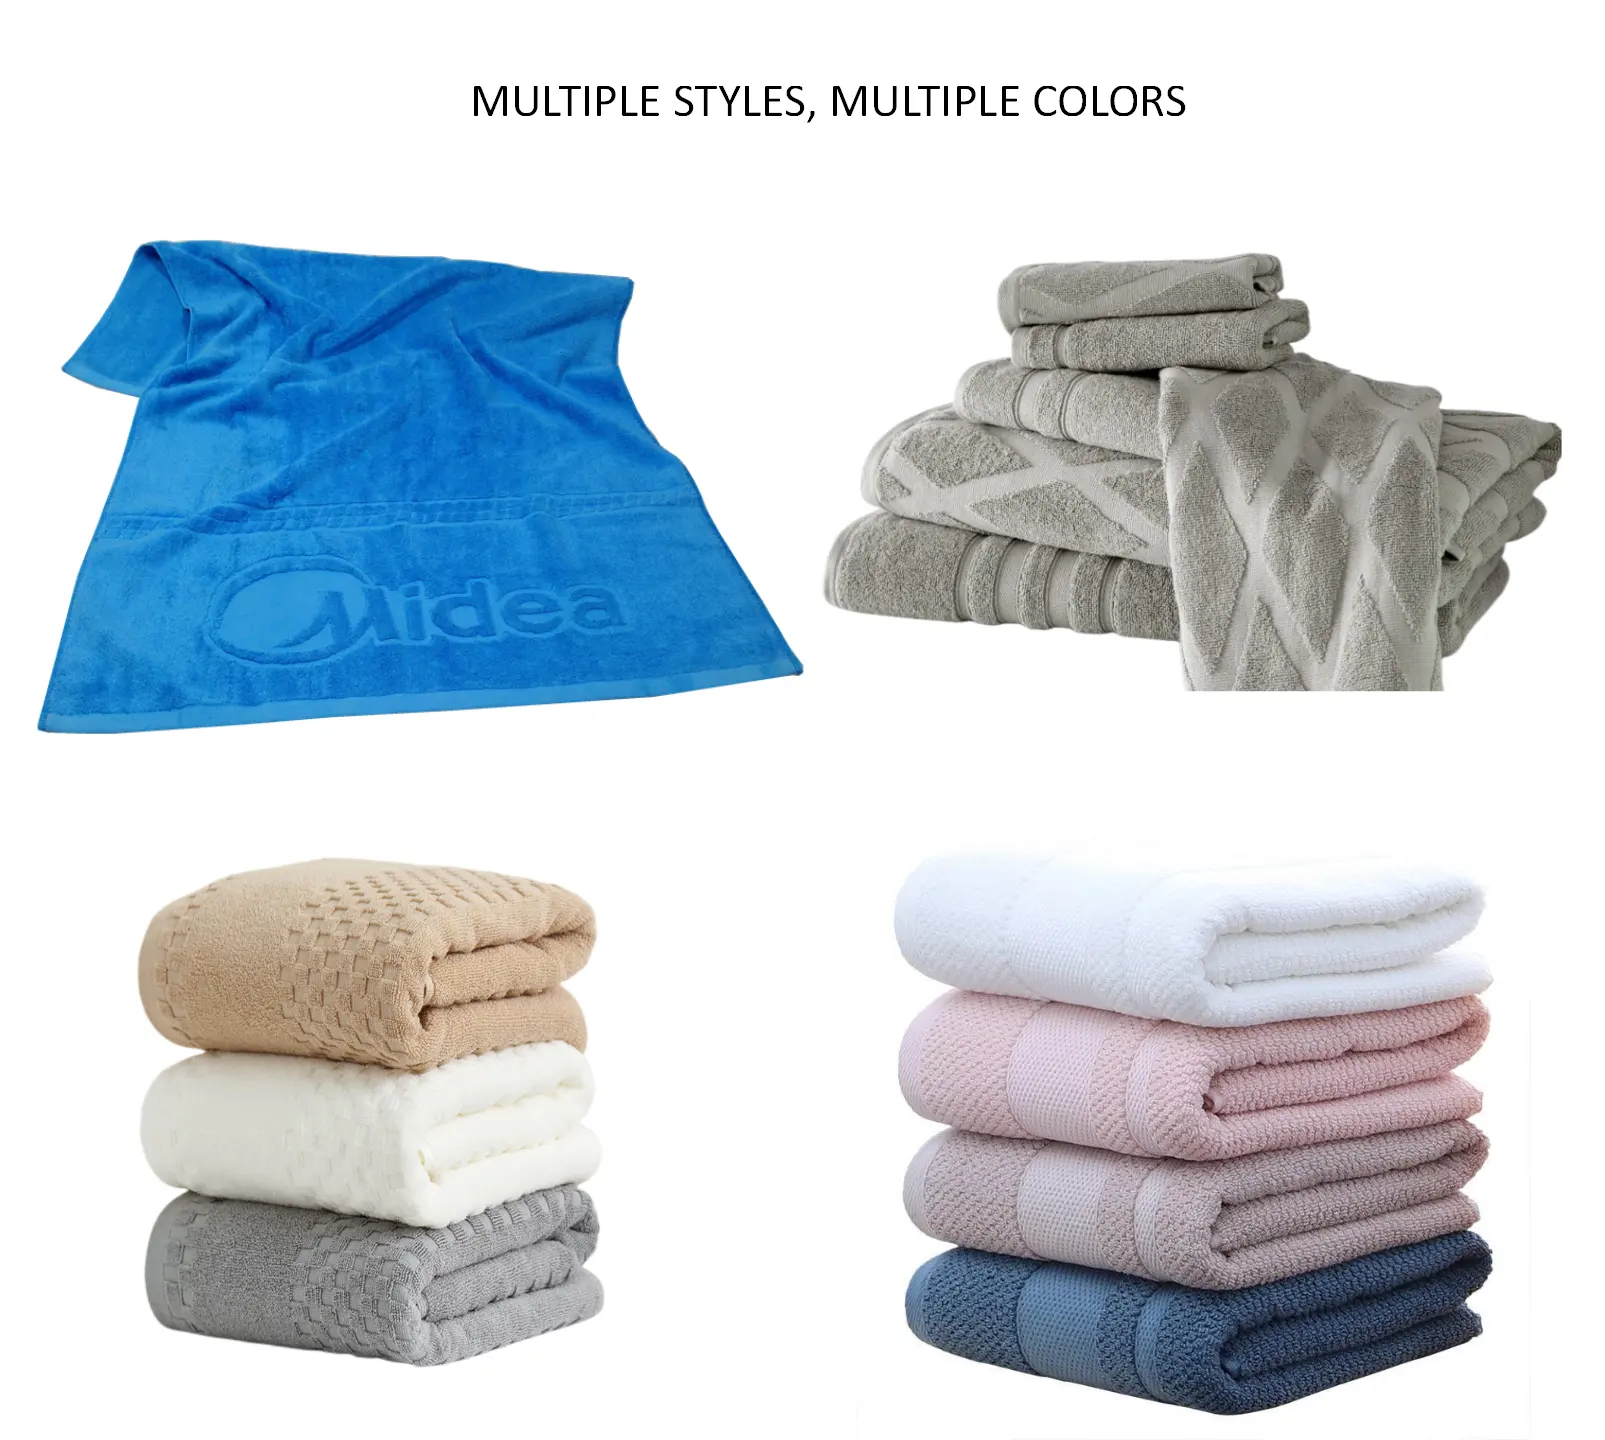 Colore su misura 100% cotone jacquard telo mare personalizzato logo in rilievo asciugamani da bagno